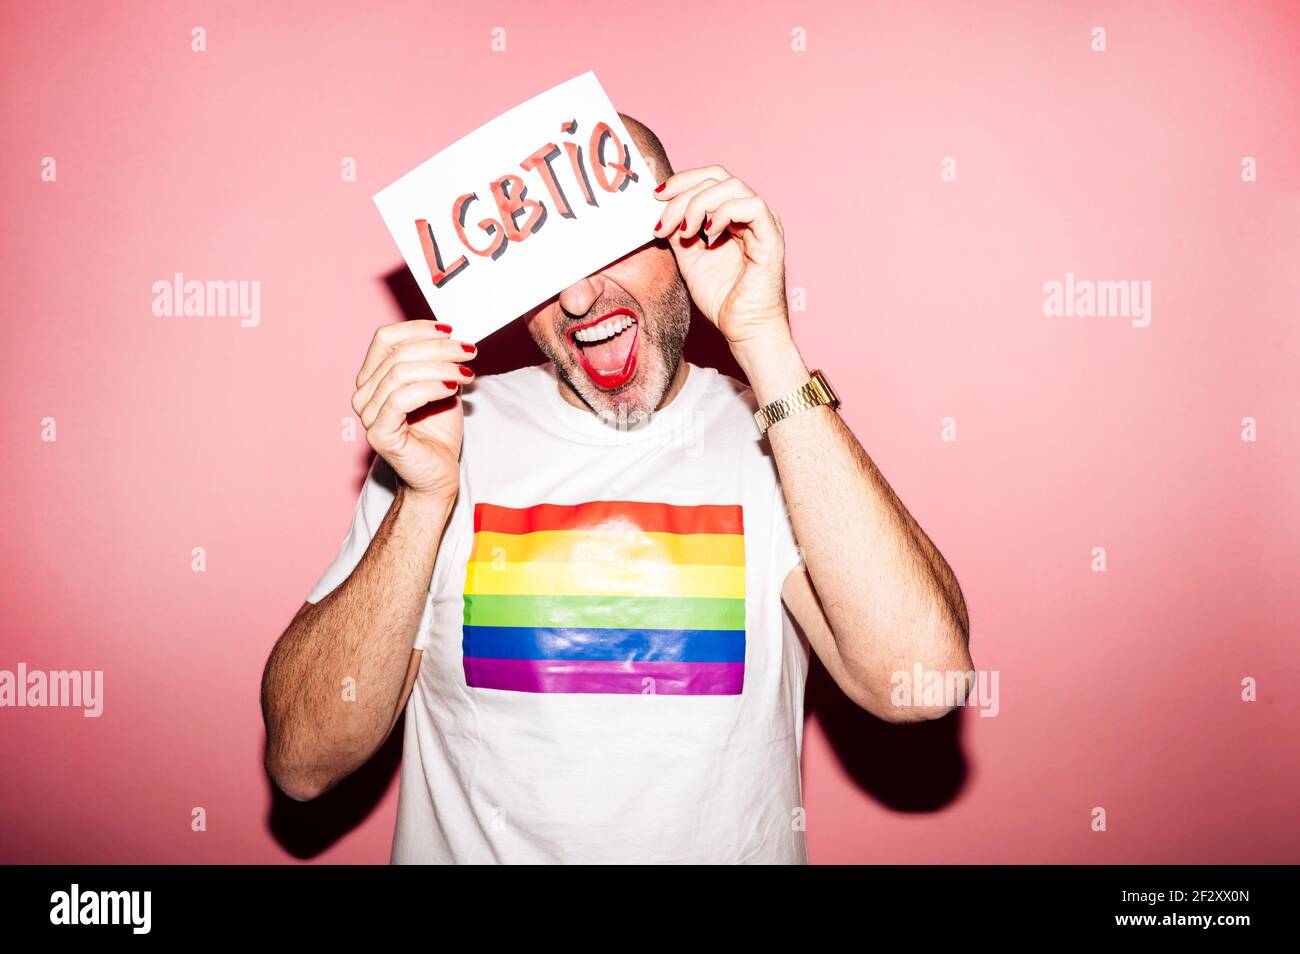 Crop rebellischen bärtigen homosexuellen Mann mit roten Lippen und Maniküre Erstellen Grimasse beim Anzeigen und Bedecken Gesicht mit Papier mit LGBTIQ-Text gegen p Stockfoto